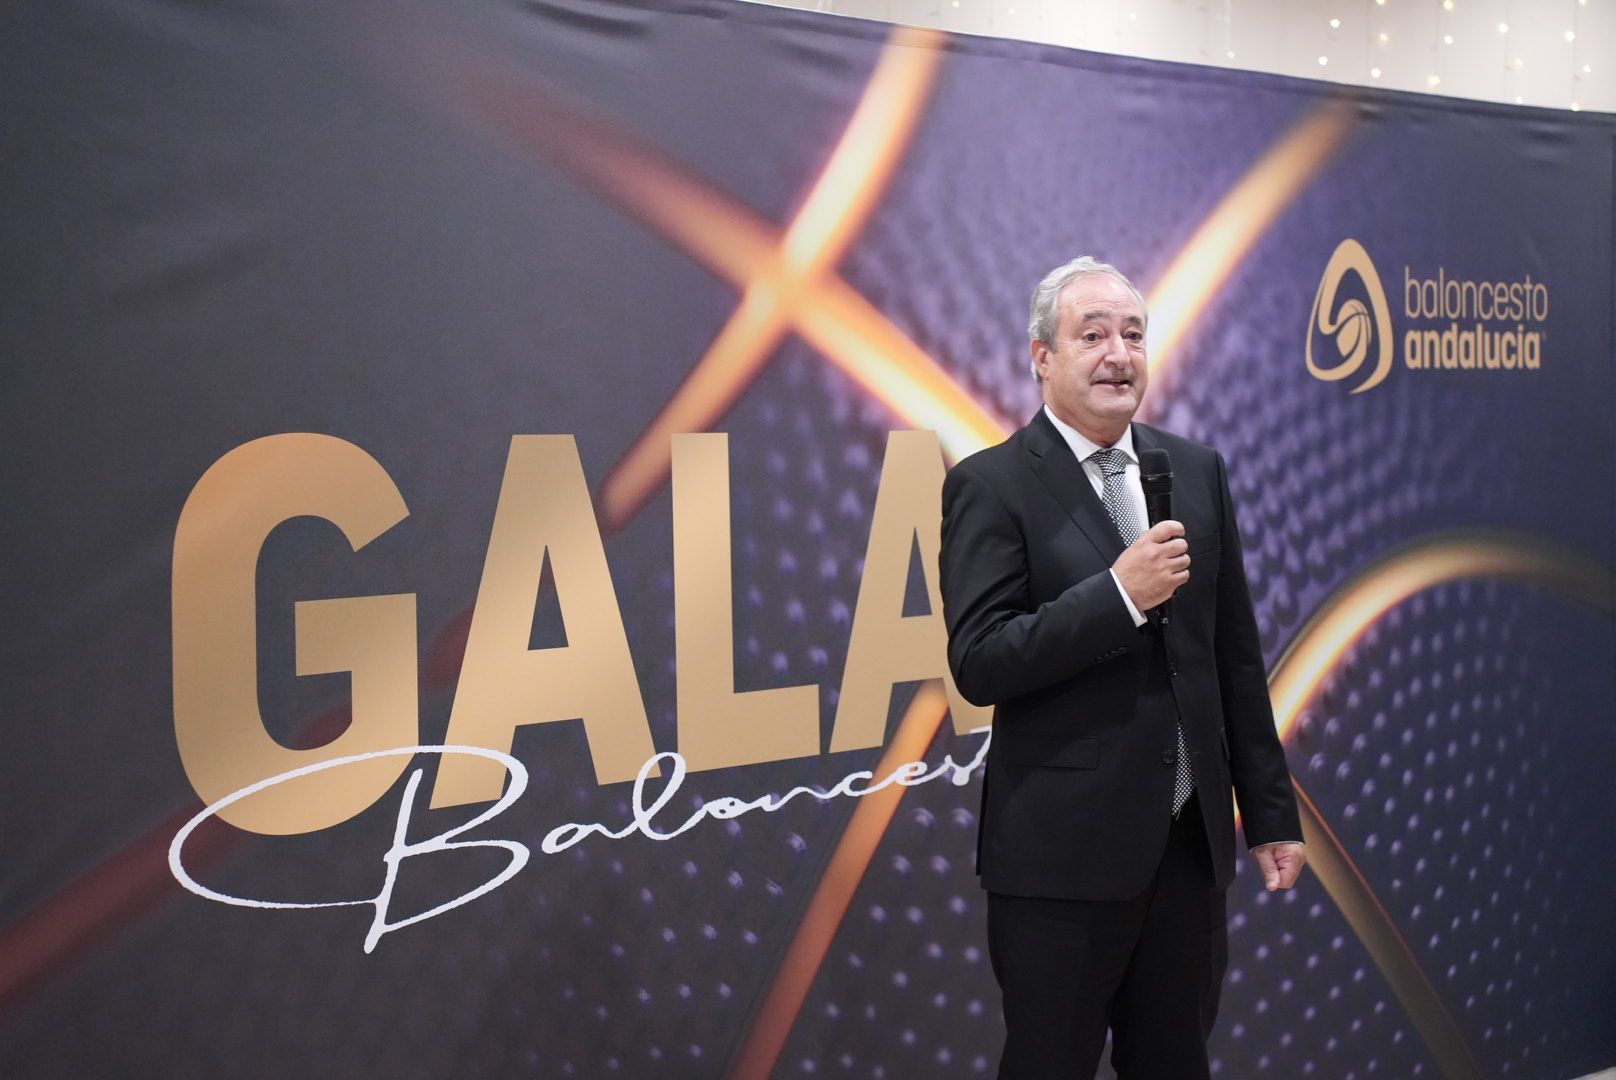 La gala de la Federación Andaluza de Baloncesto en imágenes